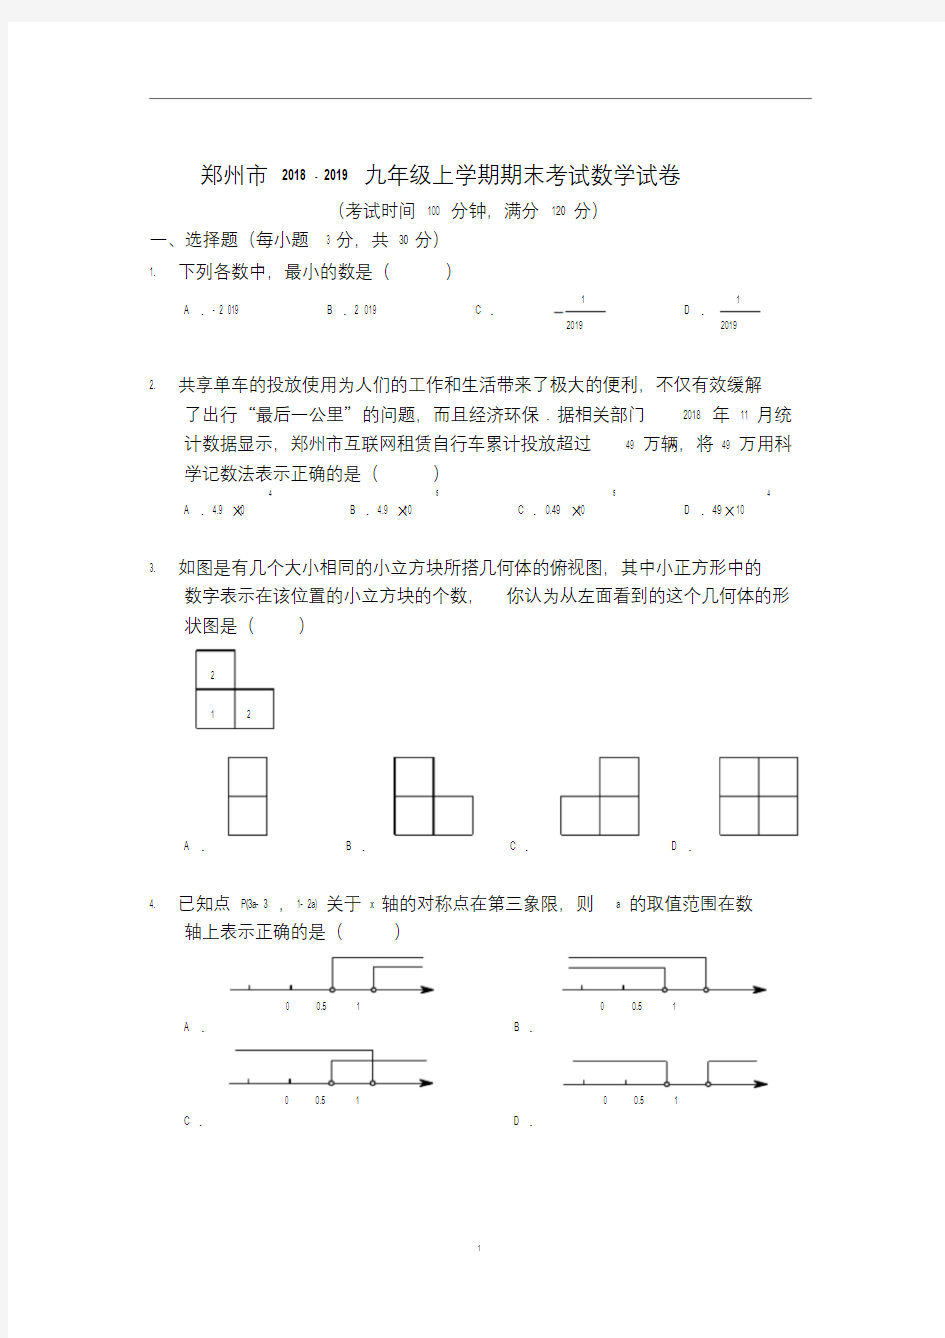 (完整版)郑州市2018-2019九年级上学期期末考试数学试卷及答案